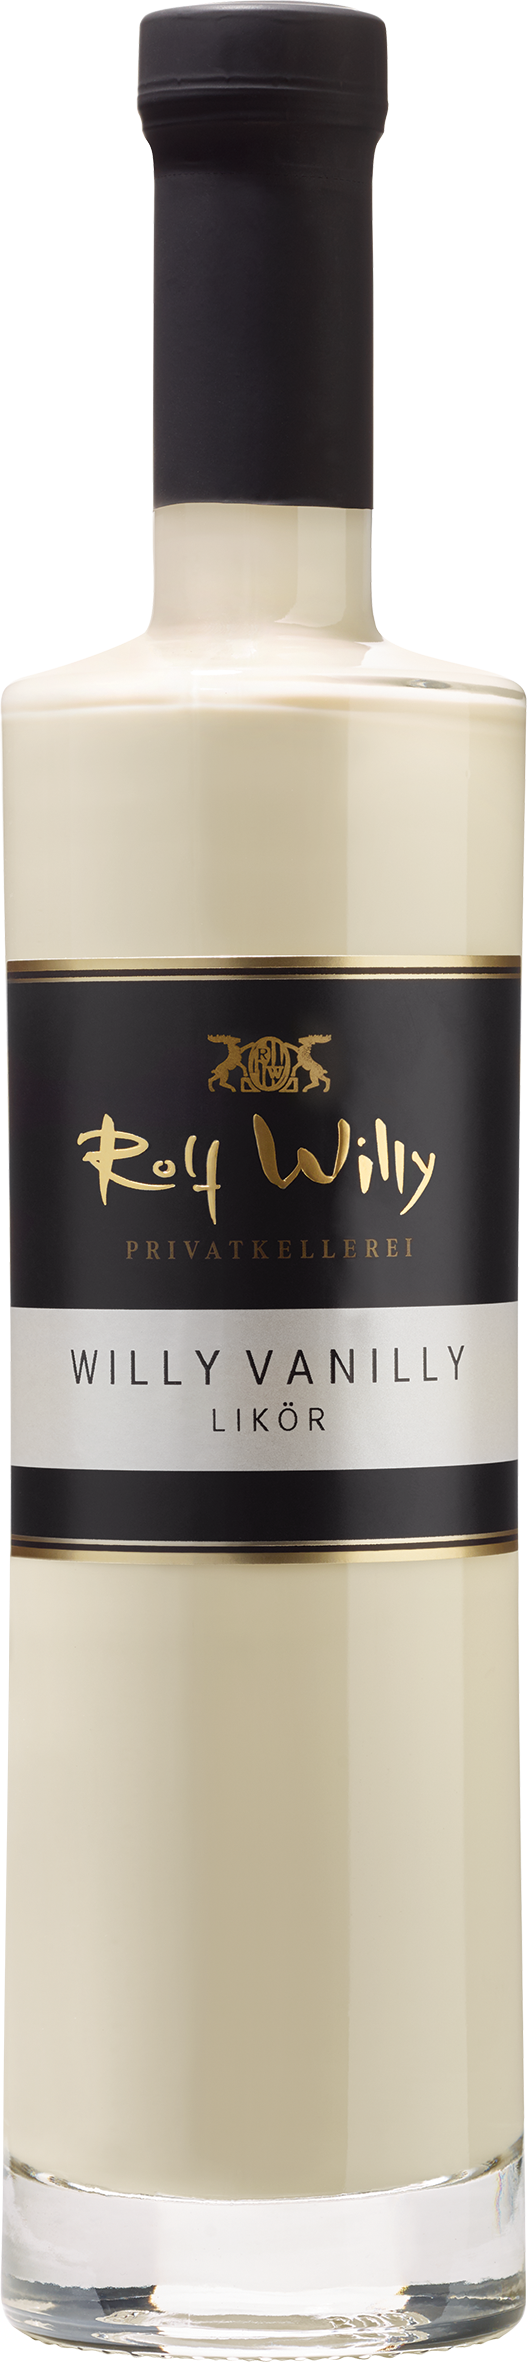 Willy Vanilly Likör